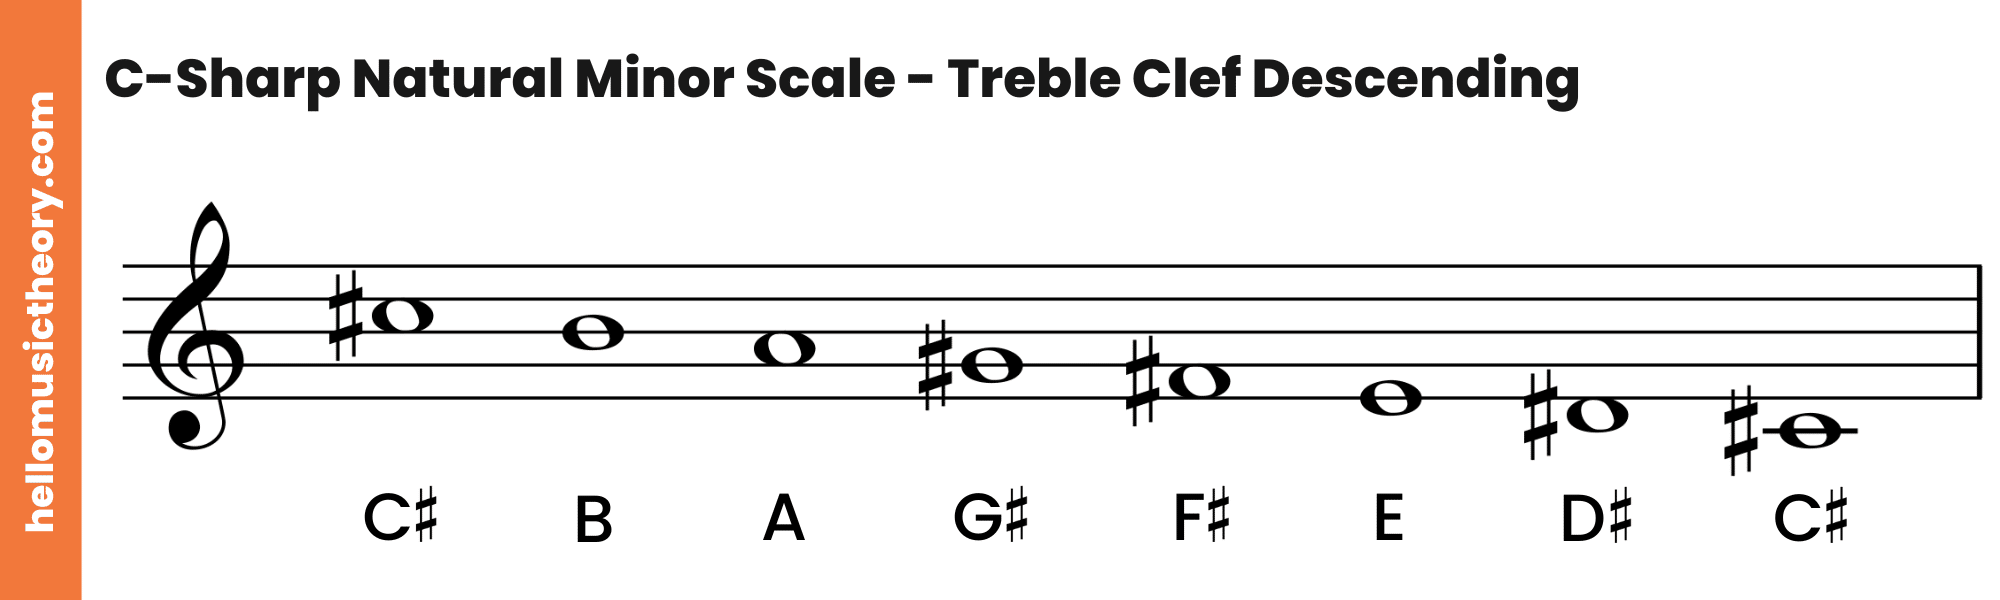 C-Sharp-Natural-Minor-Scale-Treble-Clef-Descending